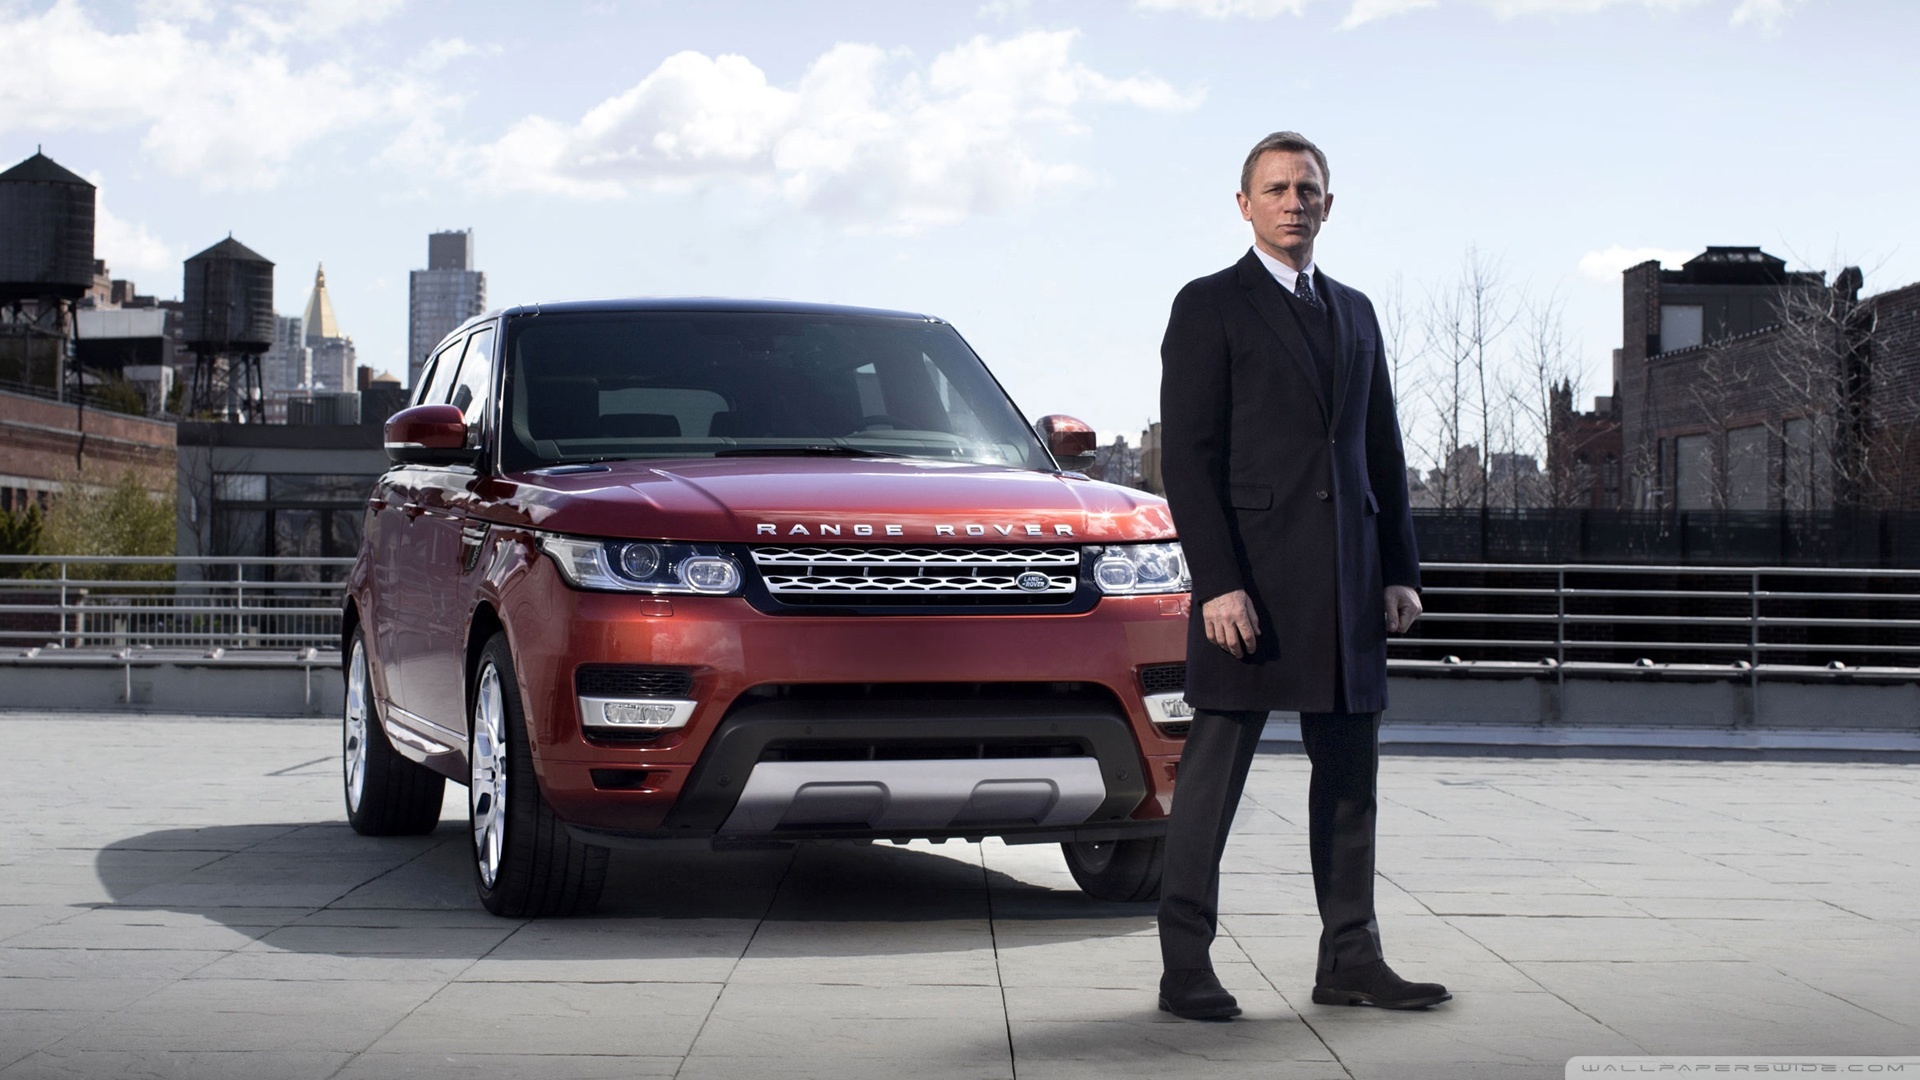 Range Rover Sport James Bond 4k HD Desktop Wallpaper For